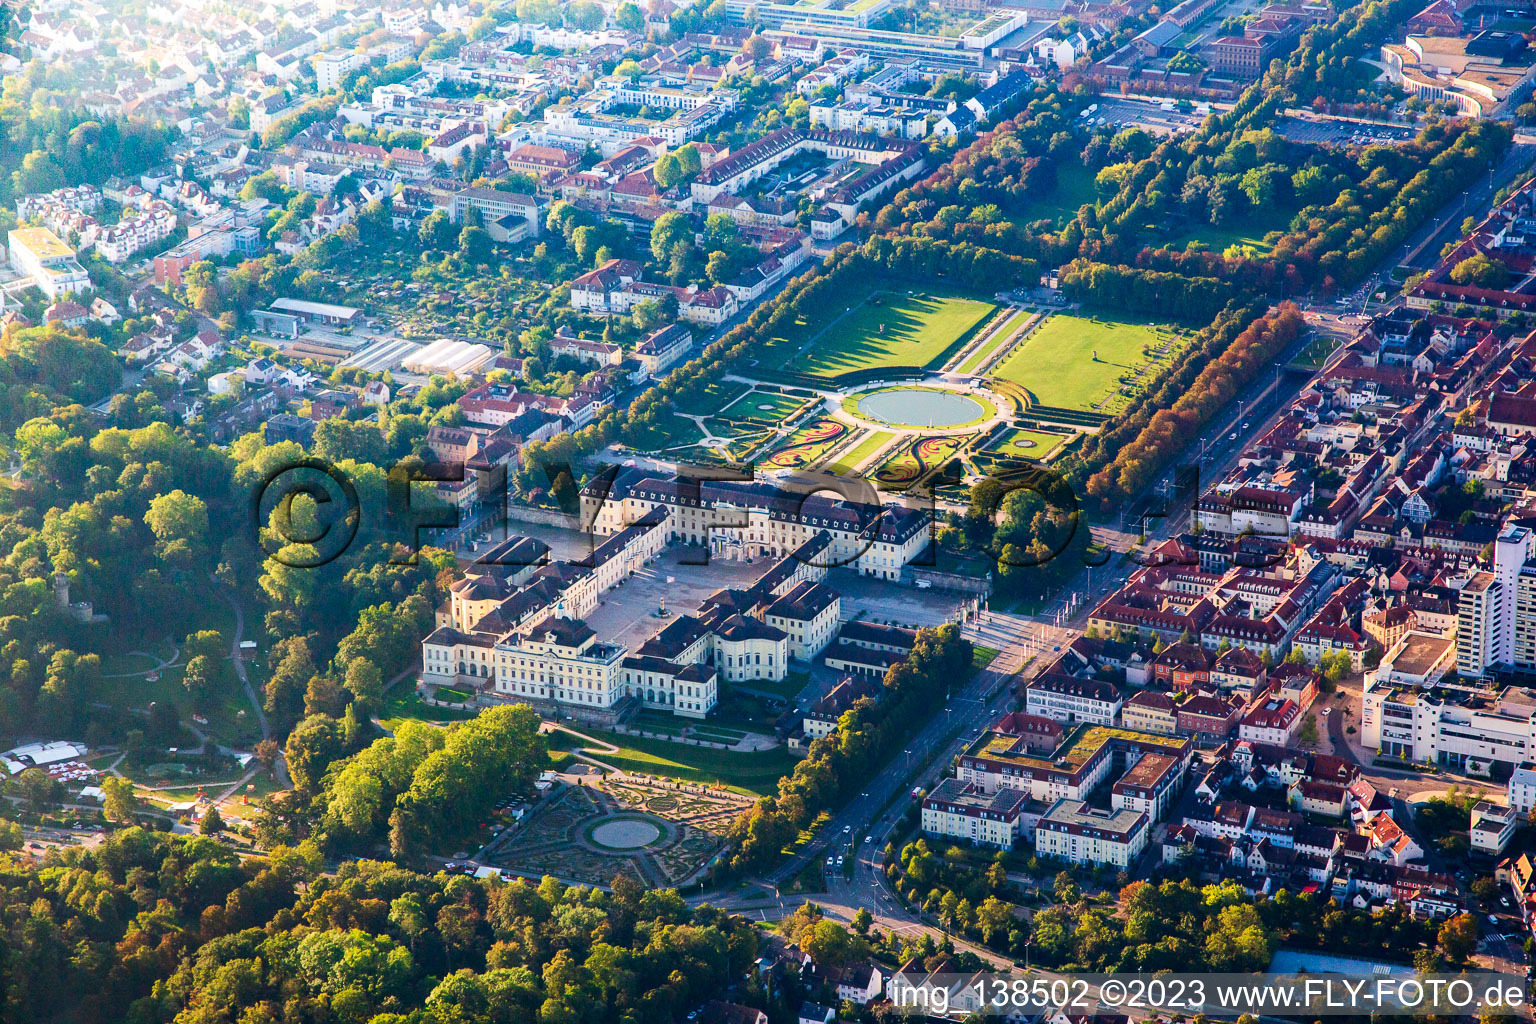 Luftbild von Residenzschloss Ludwigsburg und Blühendes Barock Gartenschau im Bundesland Baden-Württemberg, Deutschland